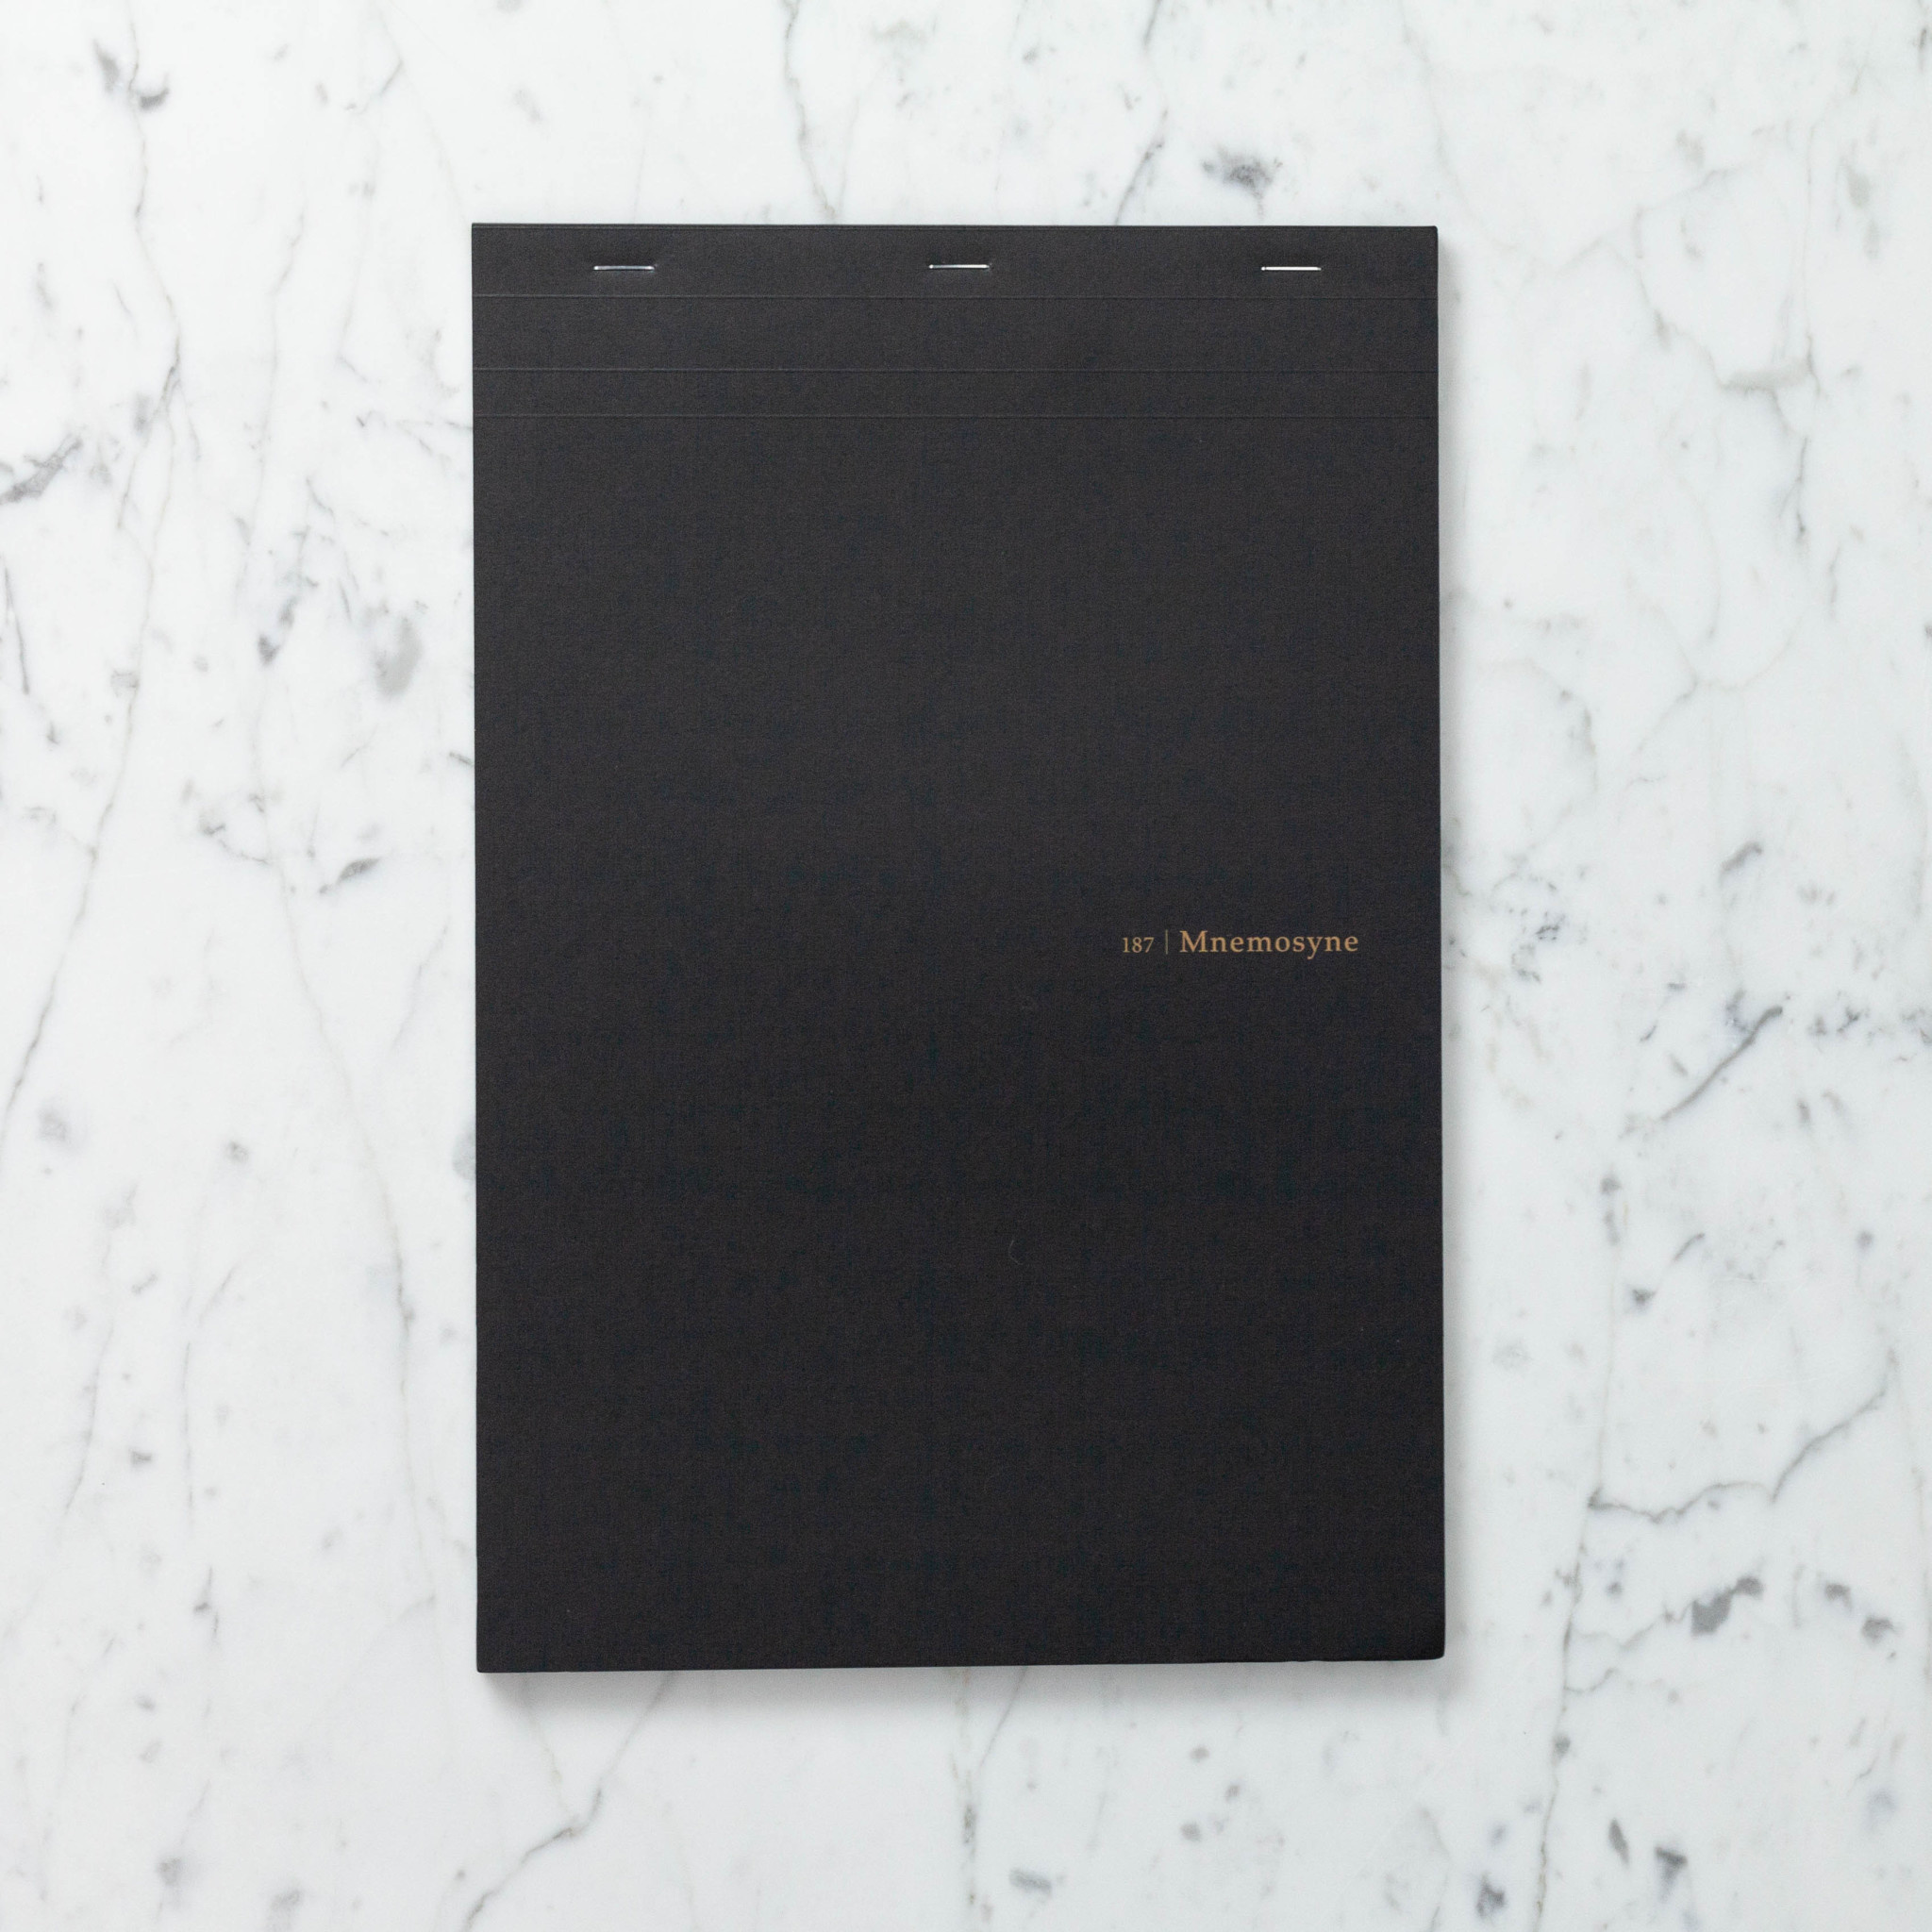 Mnemosyne Maruman Black Notepad - 187- Grid - A4